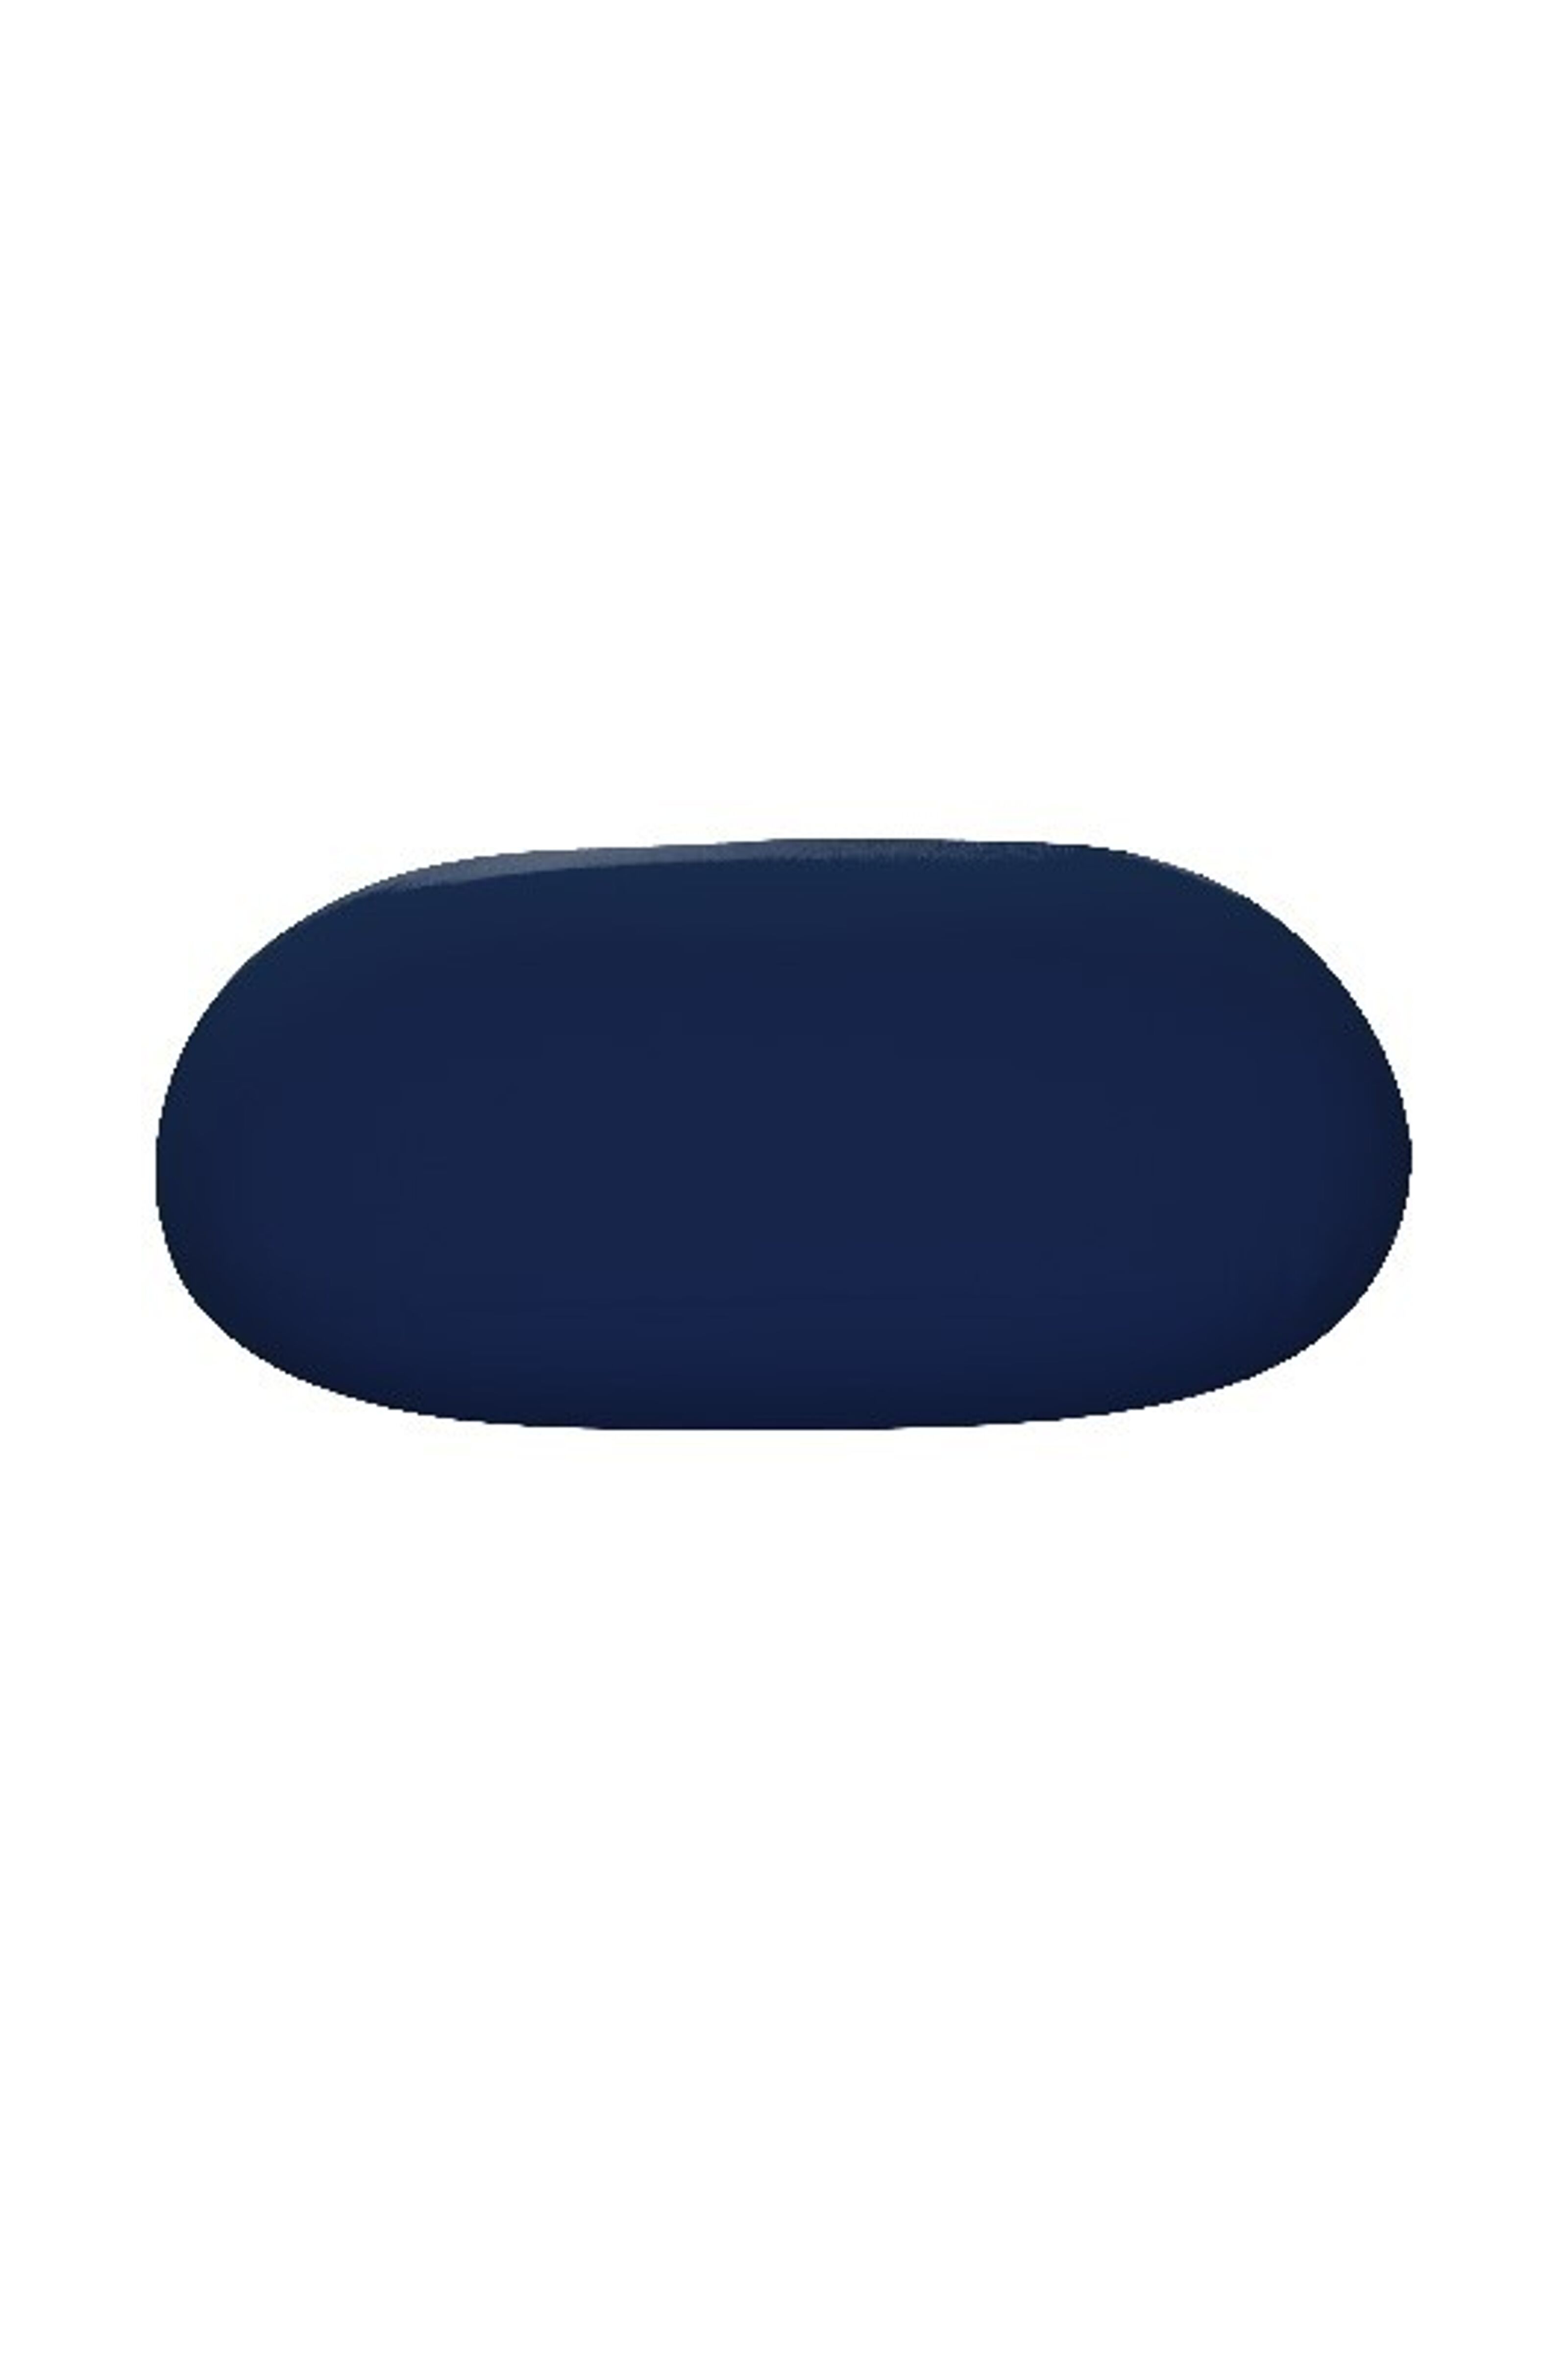 Kaufen Sie Sitzsack Jump Großhandelspreisen Blau zu Navy